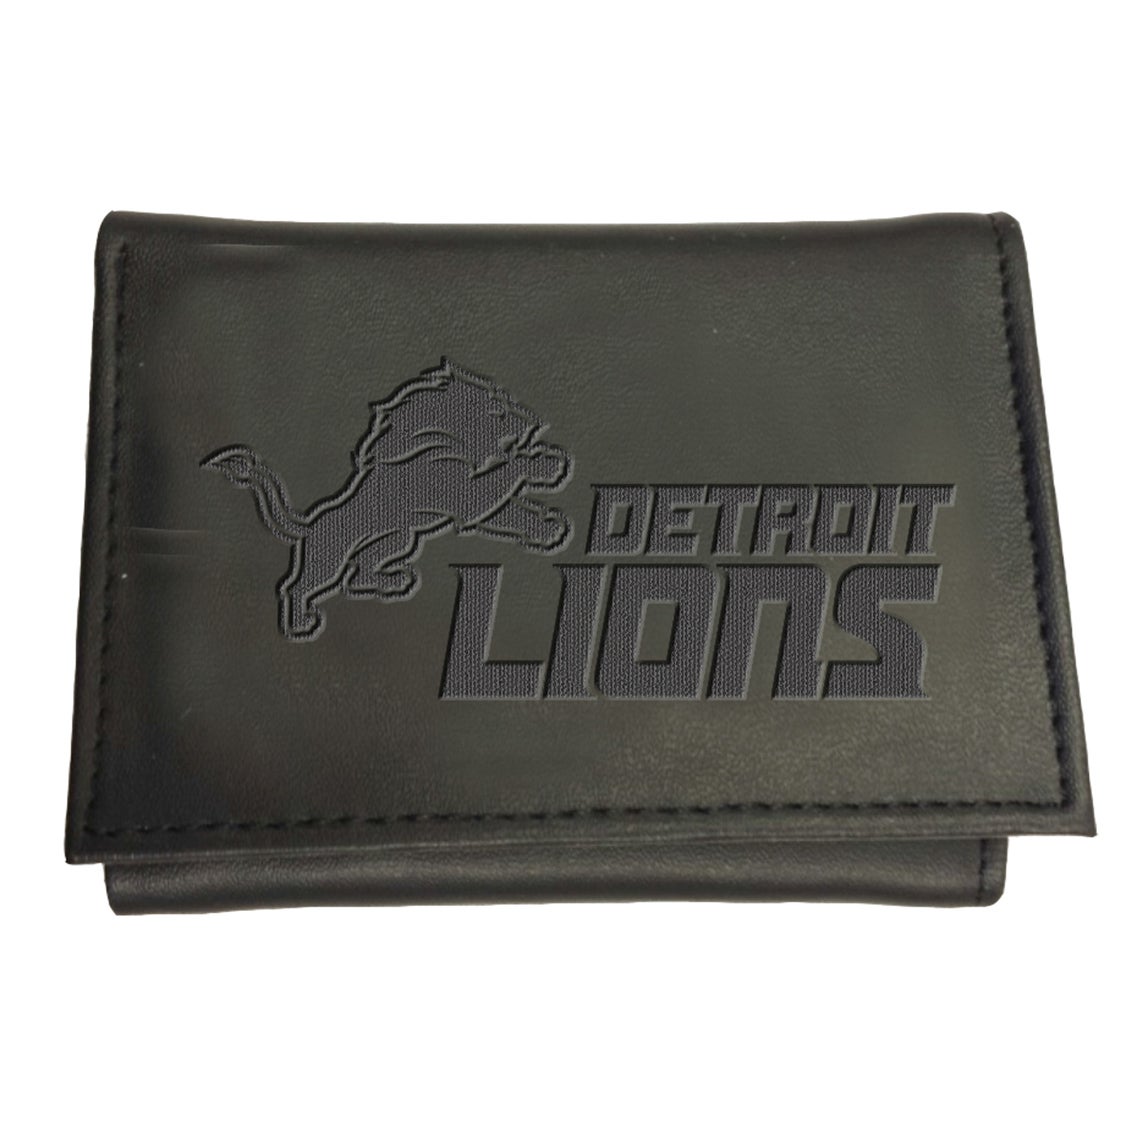 Detroit Lions Tri-Fold Leather Wallet